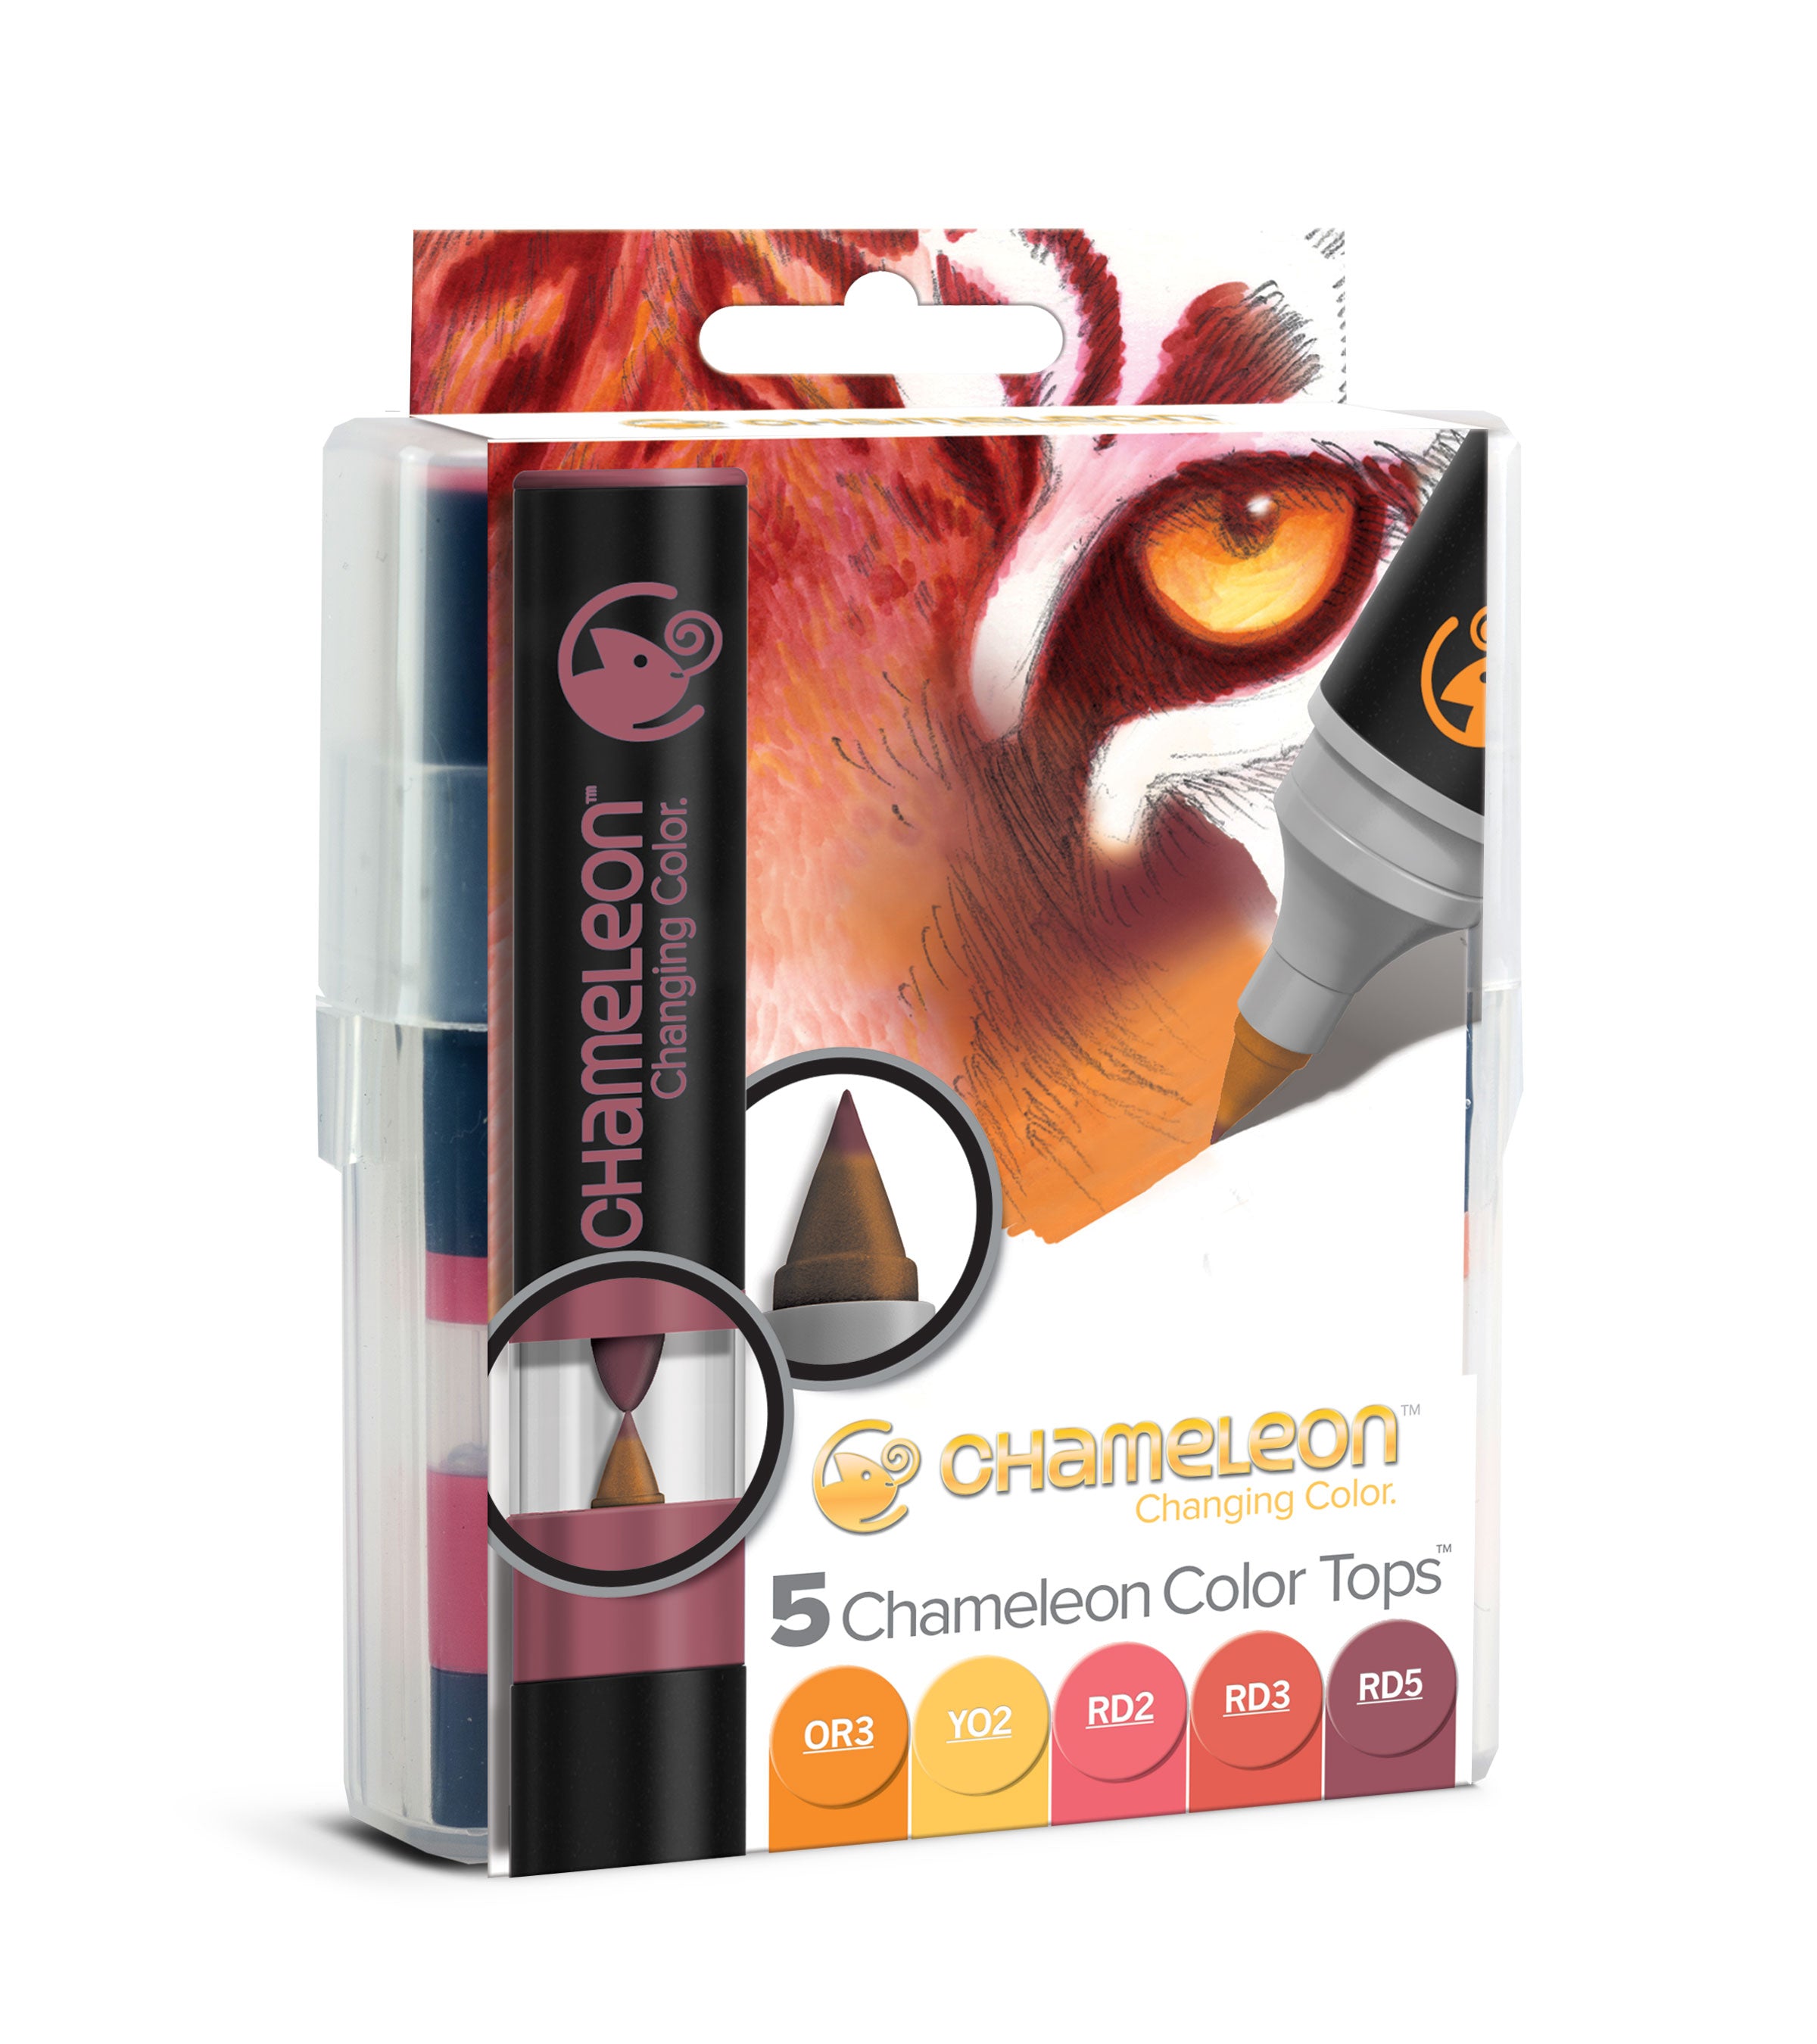 nedbrydes lide aflevere Chameleon Colour Tops - Warm Tones 5 Top Set – Chameleon Creative Products